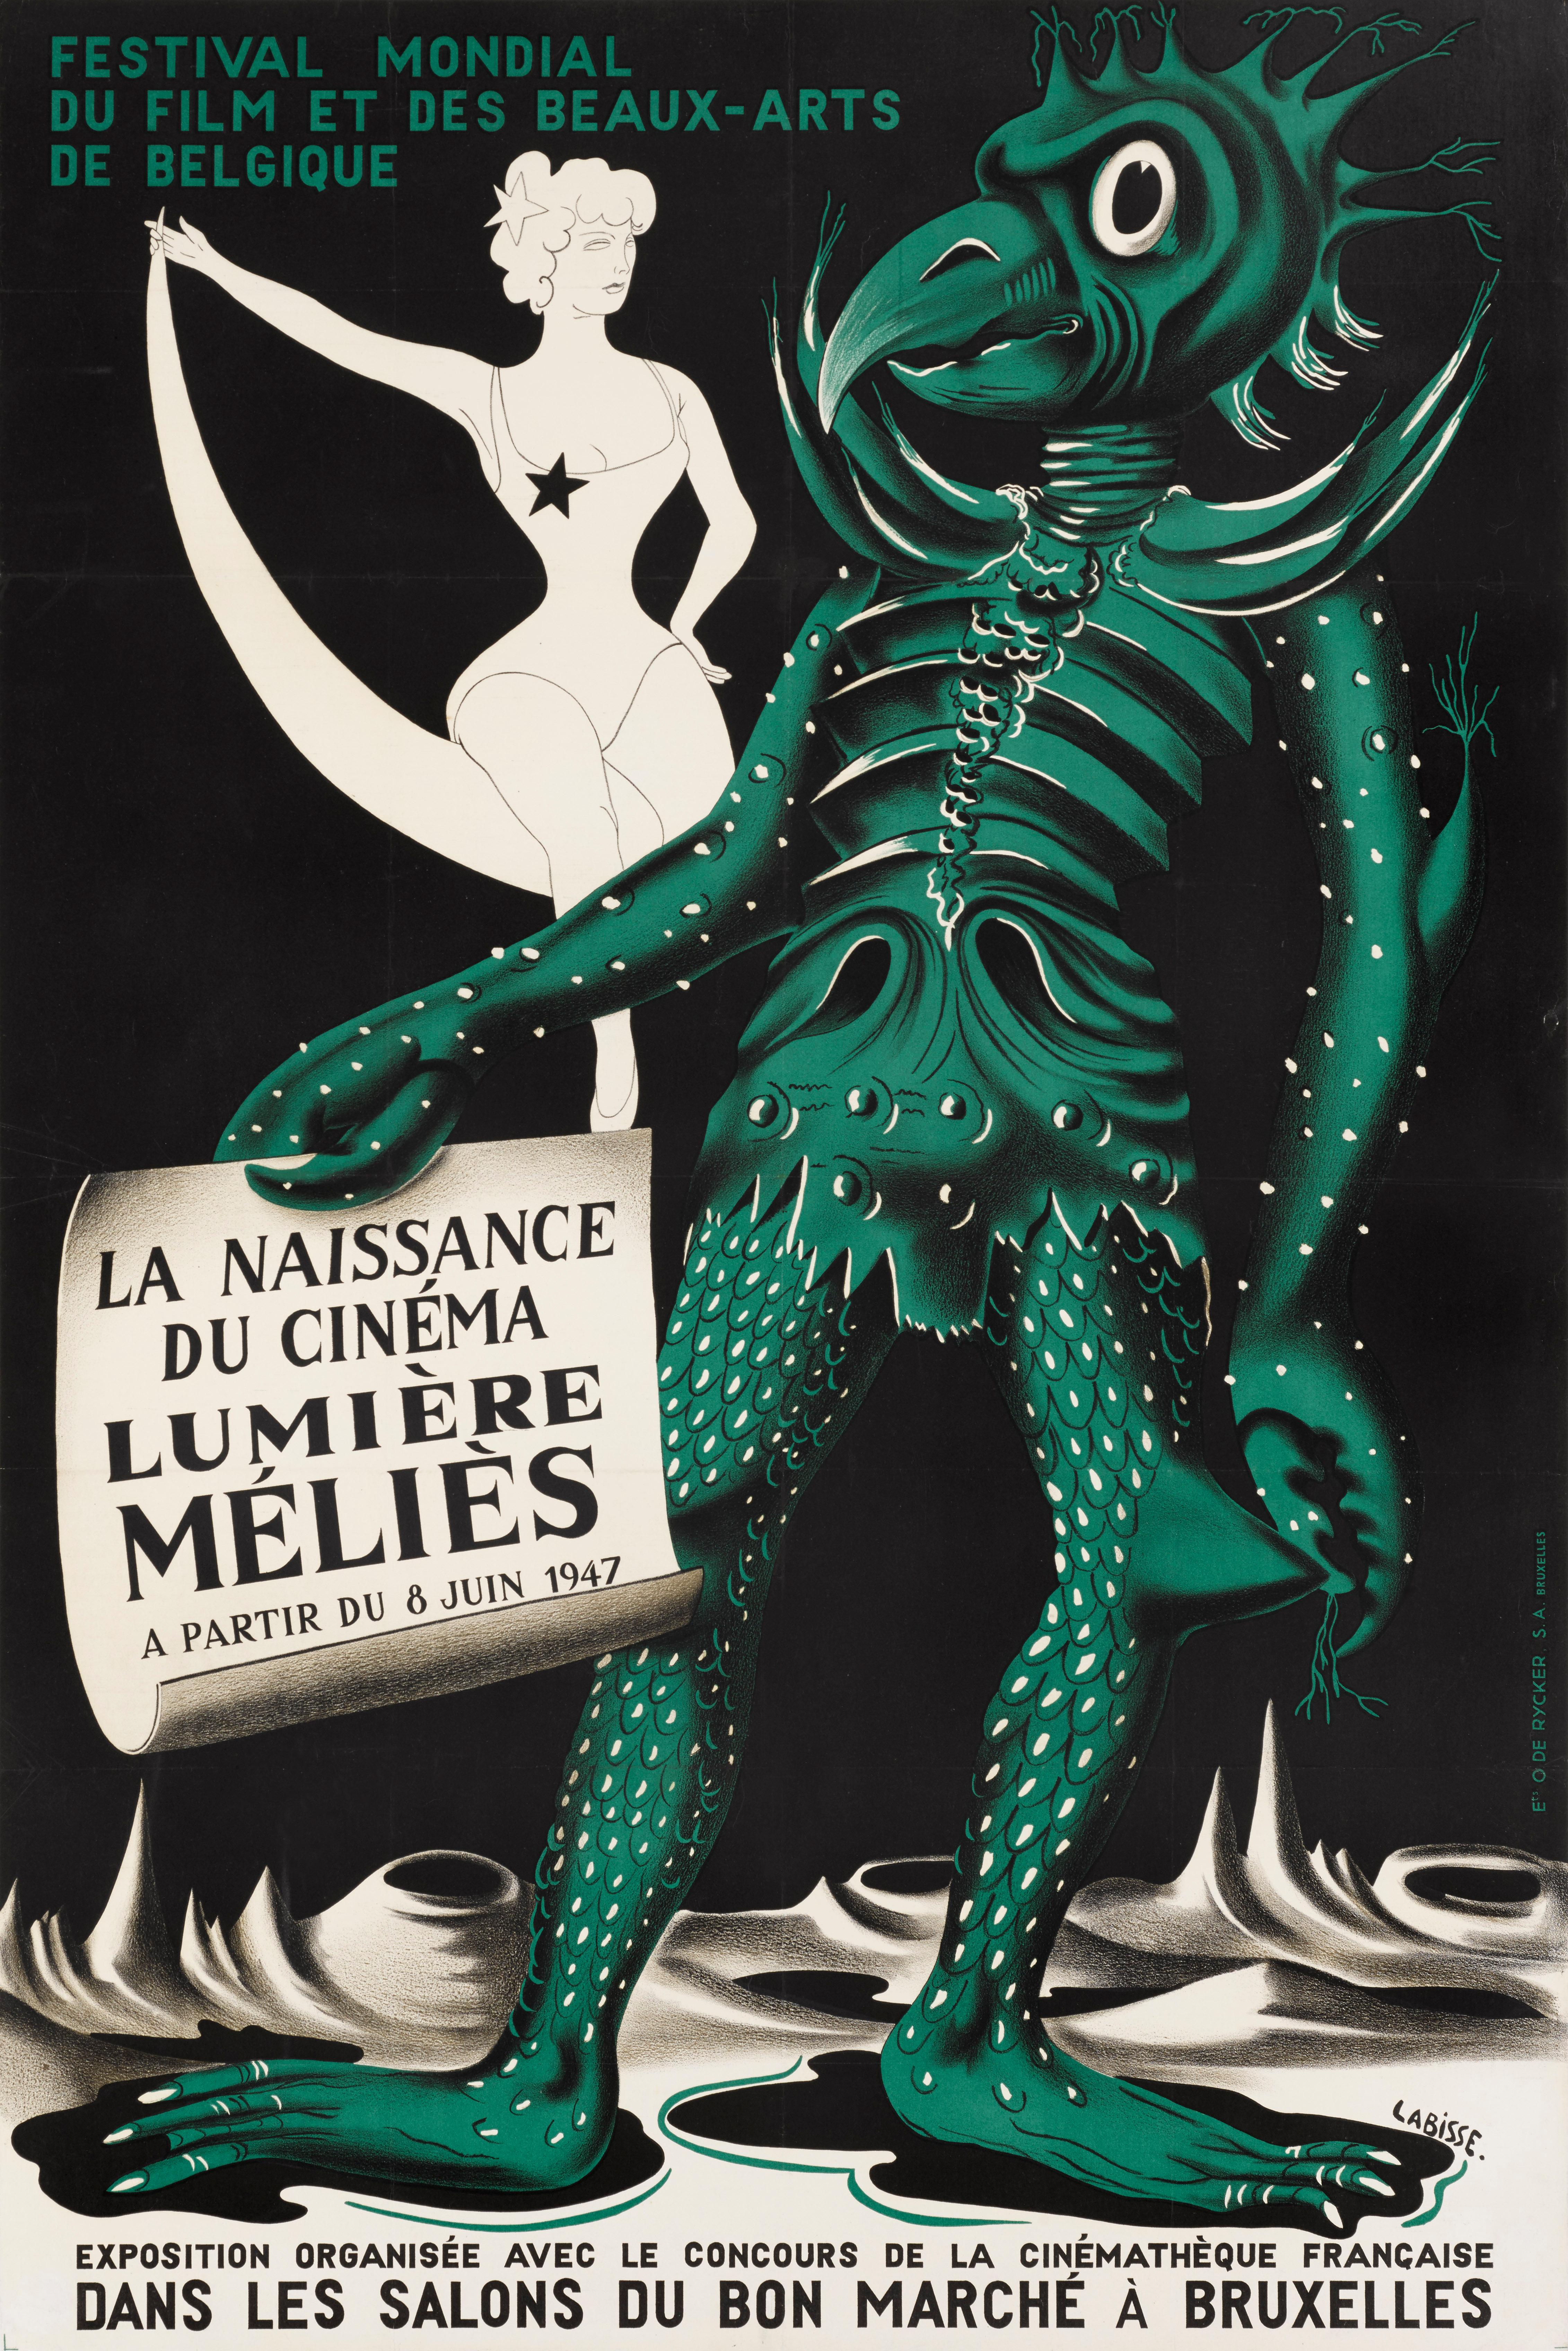 Affiche originale de film belge pour le Festival Mondial du Film Beau-Arts de Belgique (La Naissance du Cinéma Lumière Melies)
Le Mondial du Film et des Beaux-Arts s'est tenu à Bruxelles, en Belgique, en juin 1947. C'était l'un des premiers